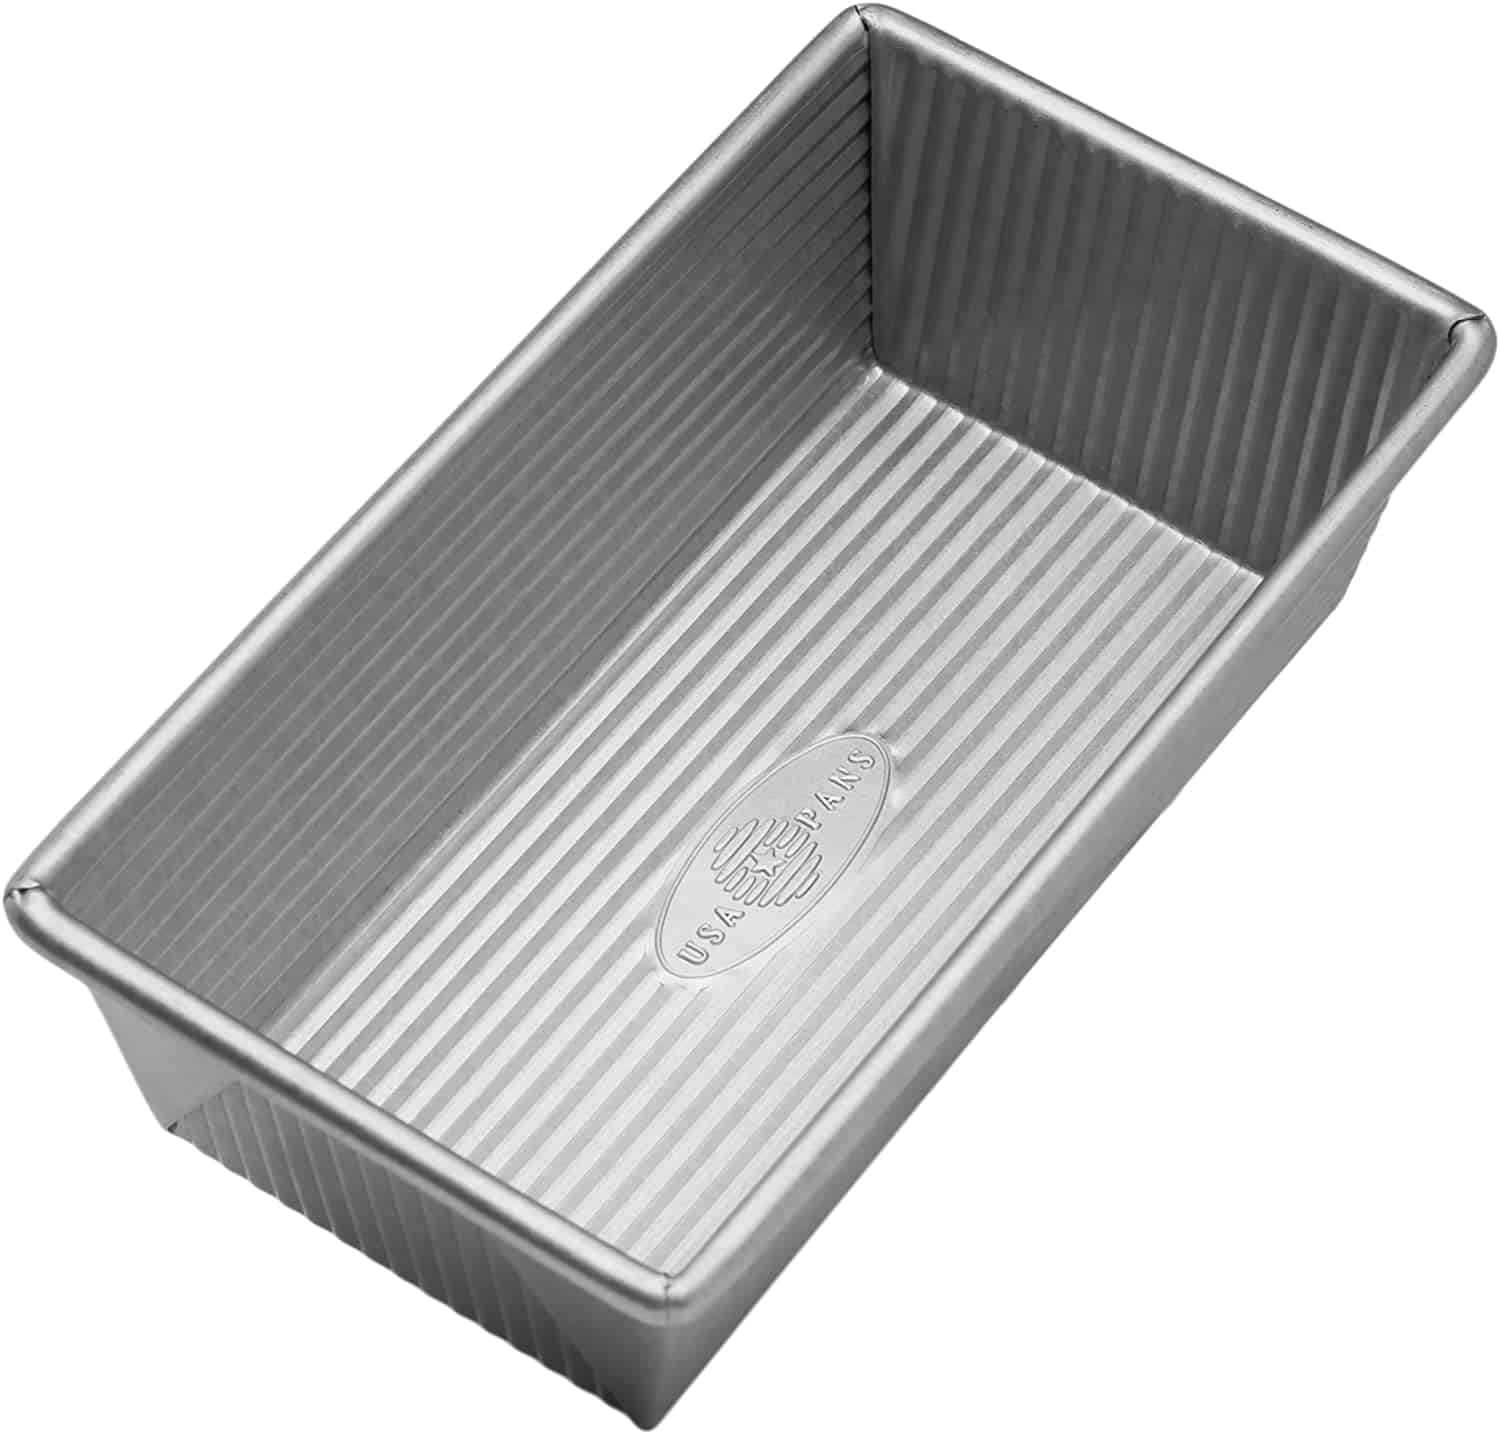 Aluminized Steel Loaf Pan